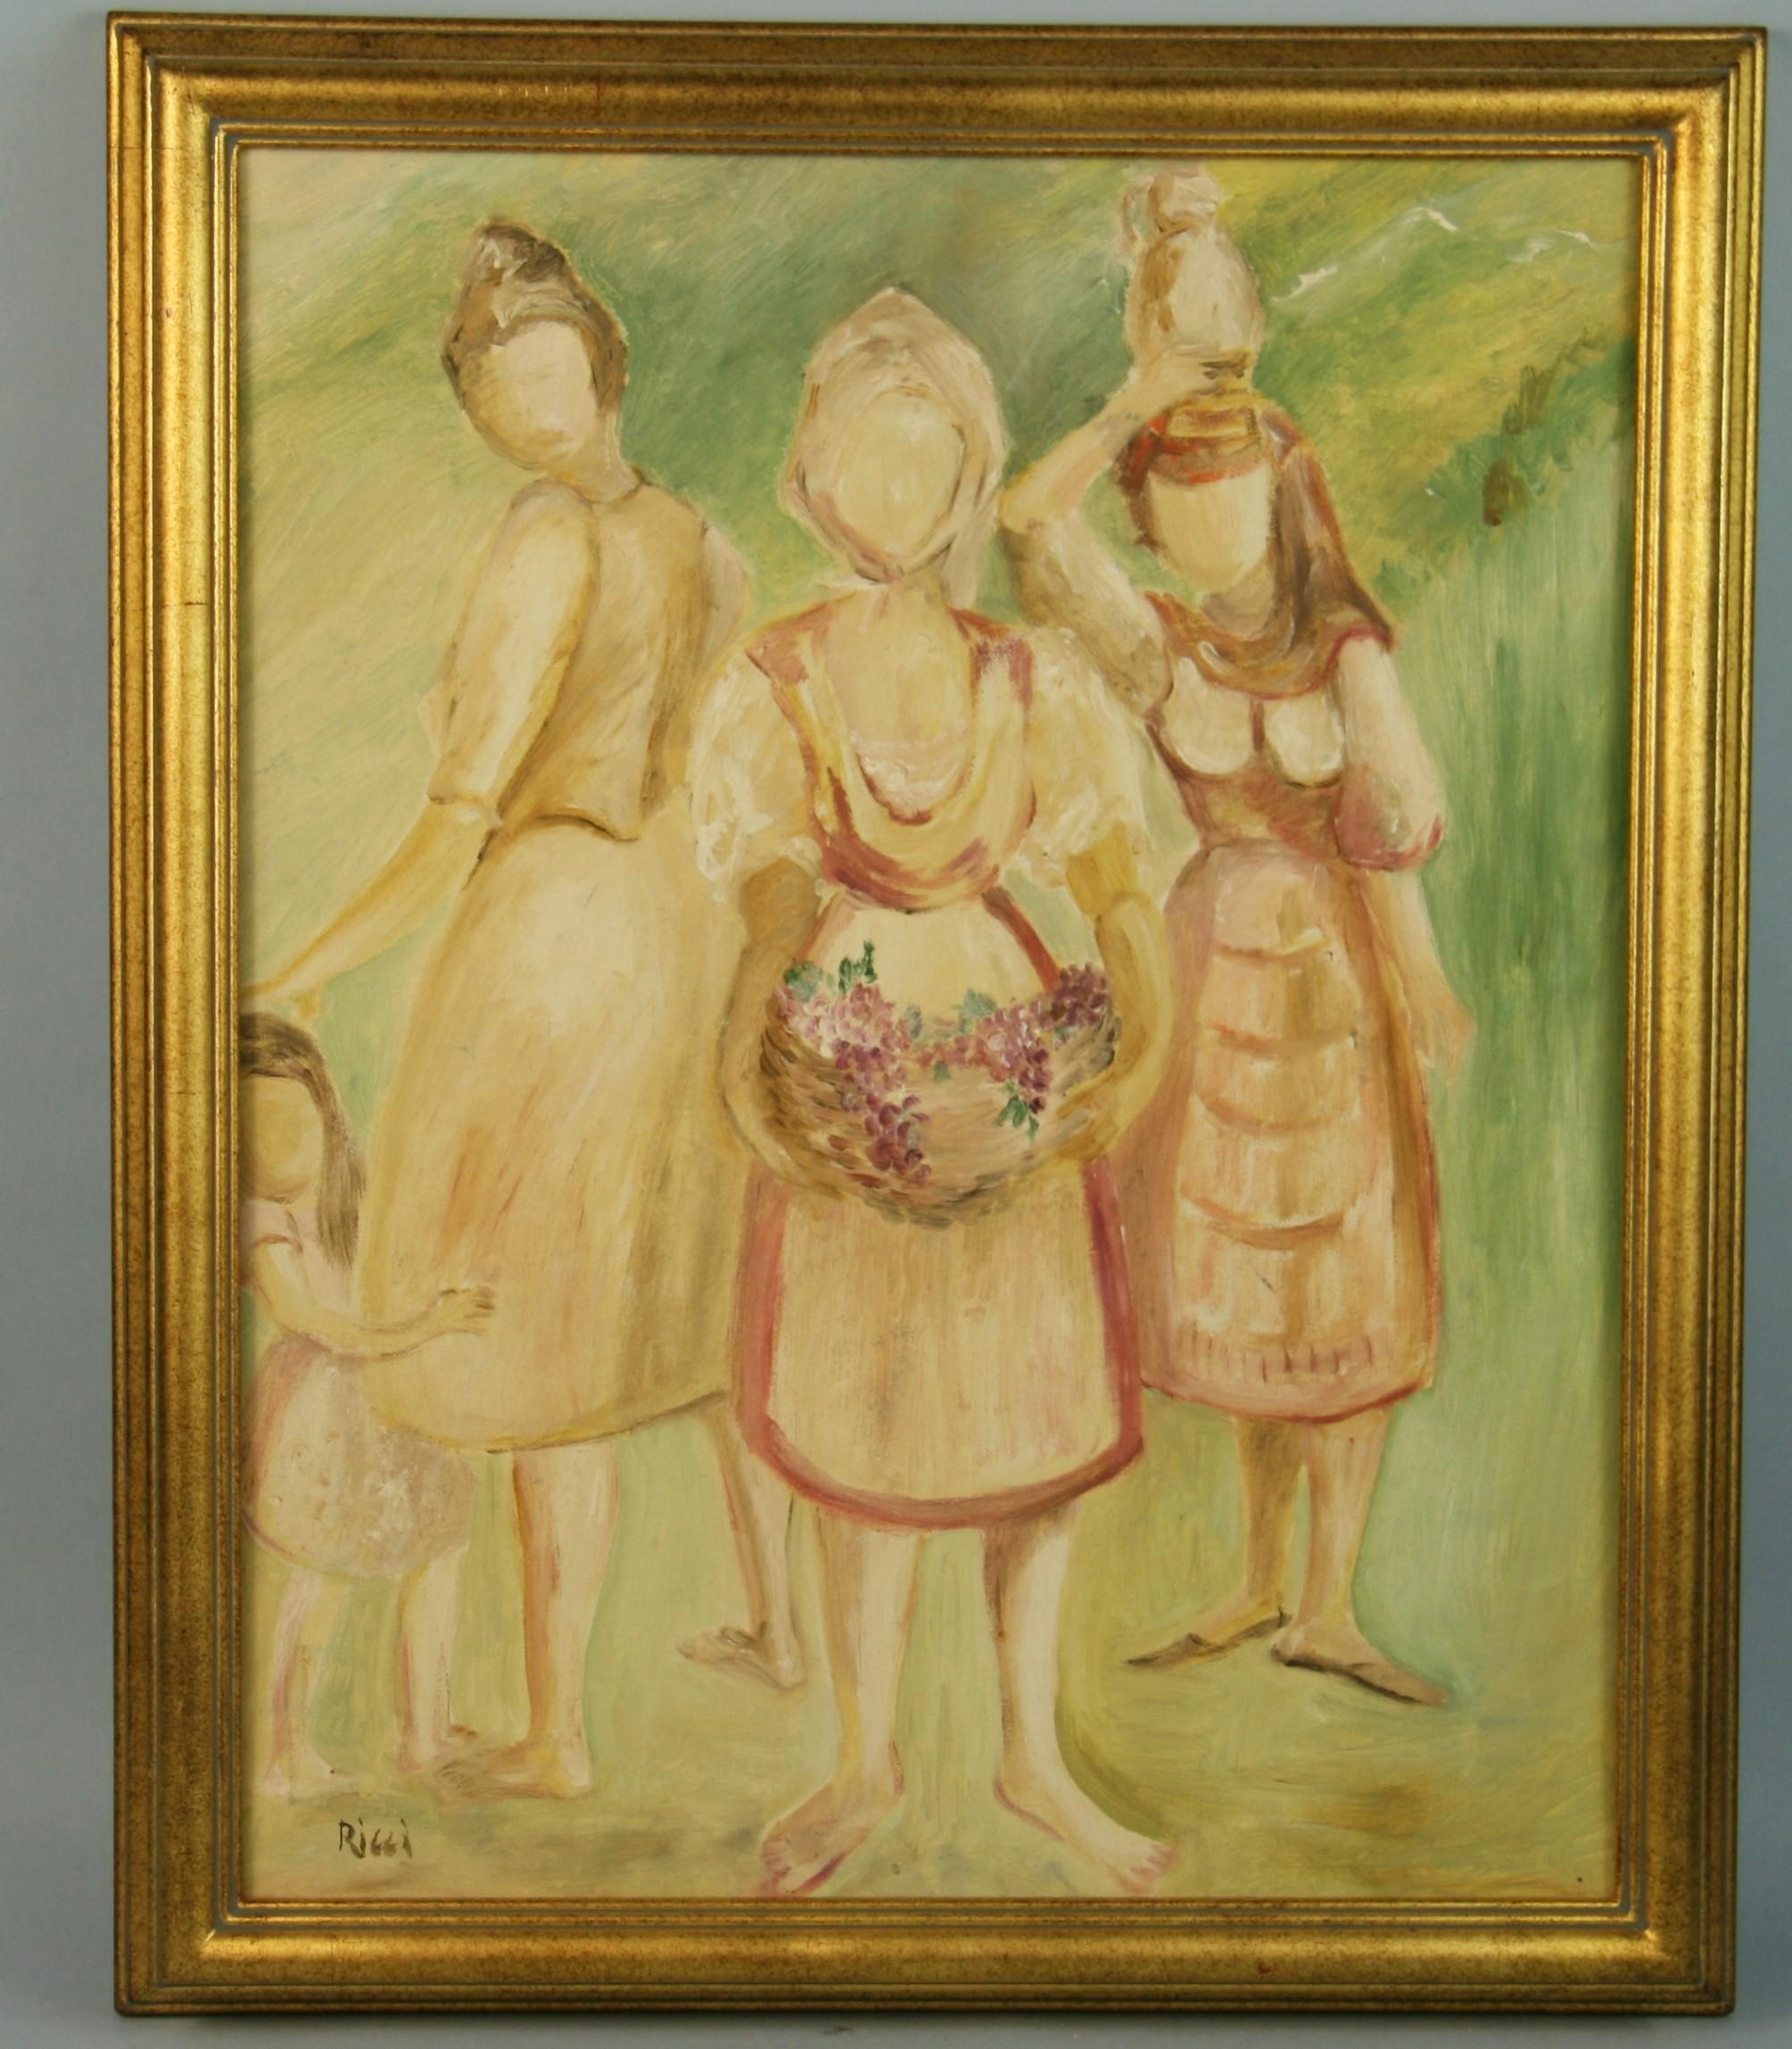 3895 Three farm girls acrylic on board in a gilt frame